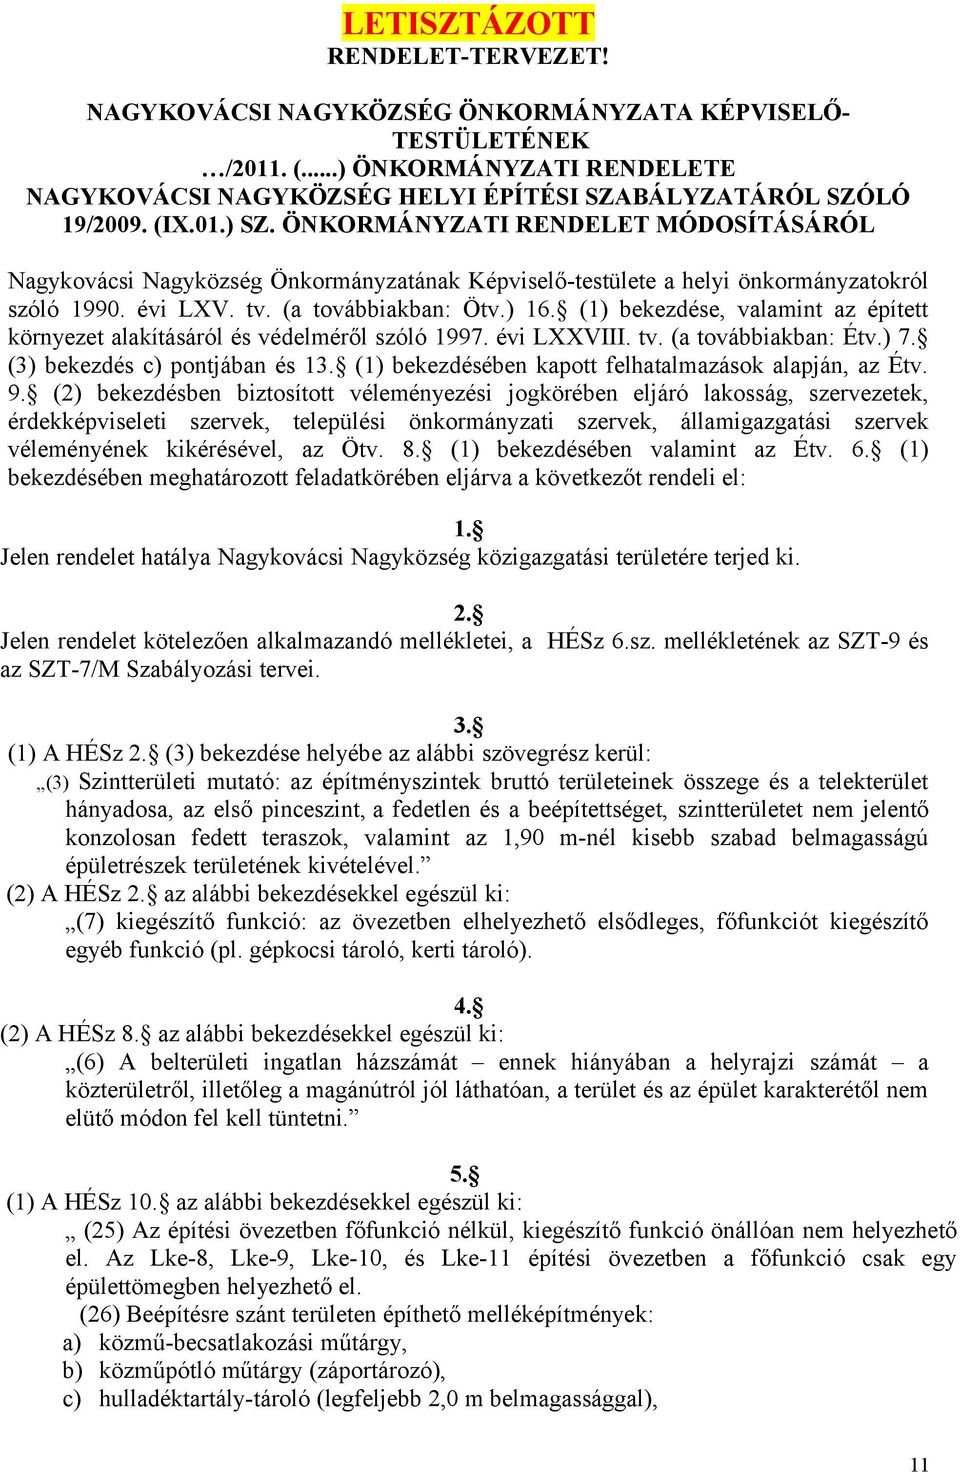 (1) bekezdése, valaint az épített környezet alakításáról és védeléről szóló 1997. évi LXXVIII. tv. (a továbbiakban: Étv.) 7. (3) bekezdés c) pontjában és 13.